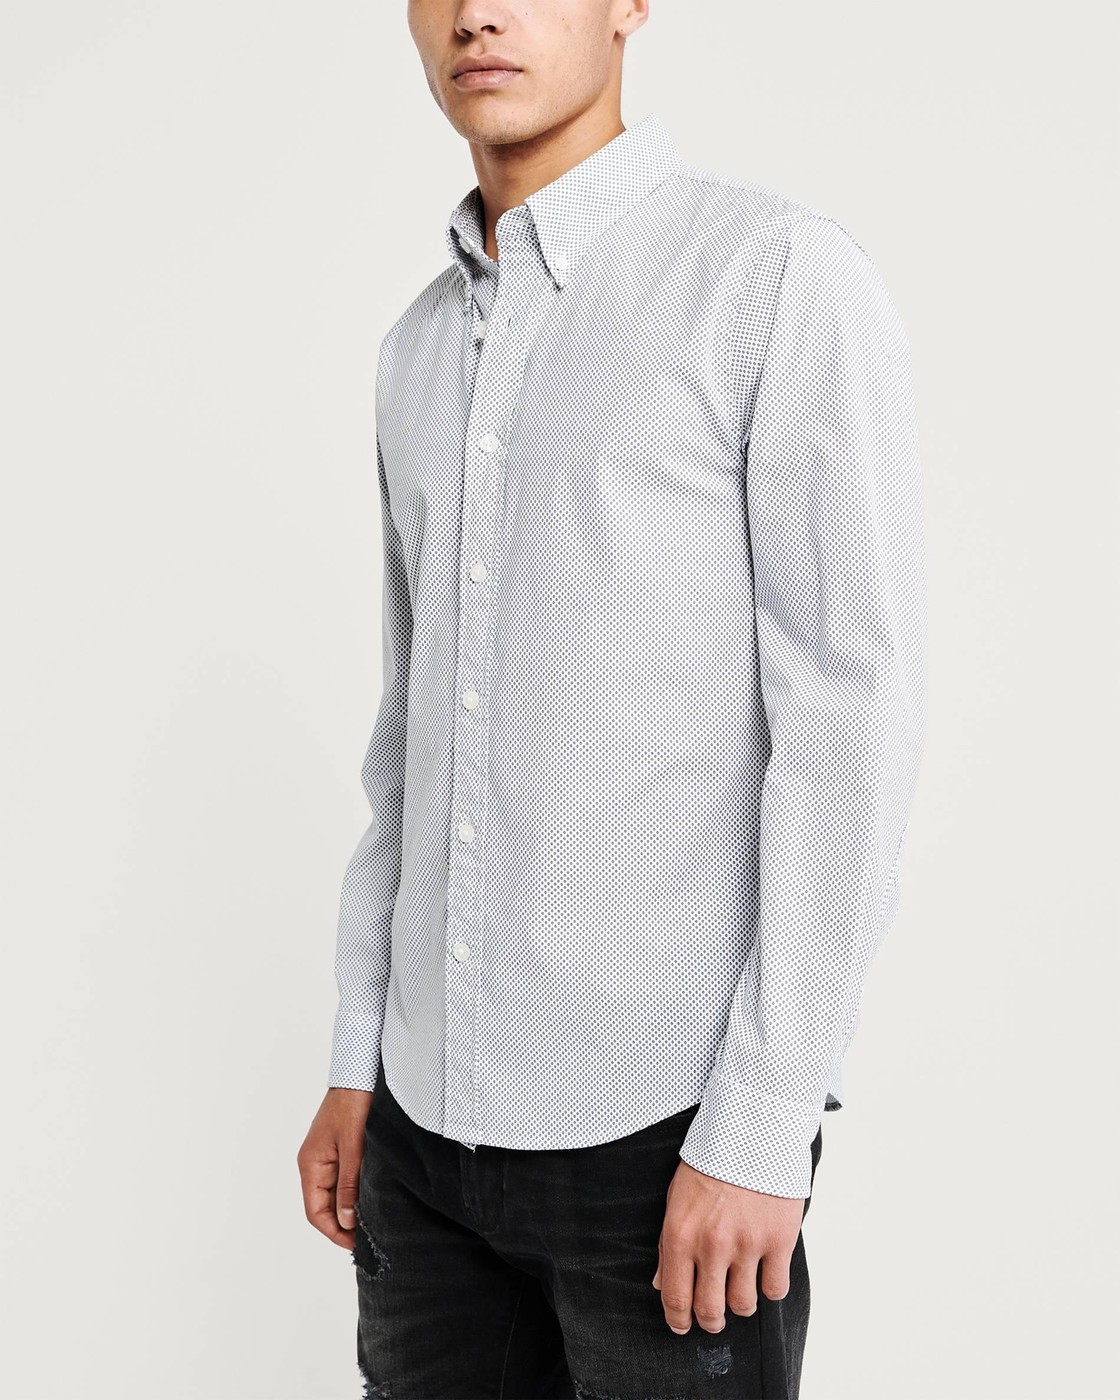 Мужская рубашка - рубашка Abercrombie & Fitch, XL, XL